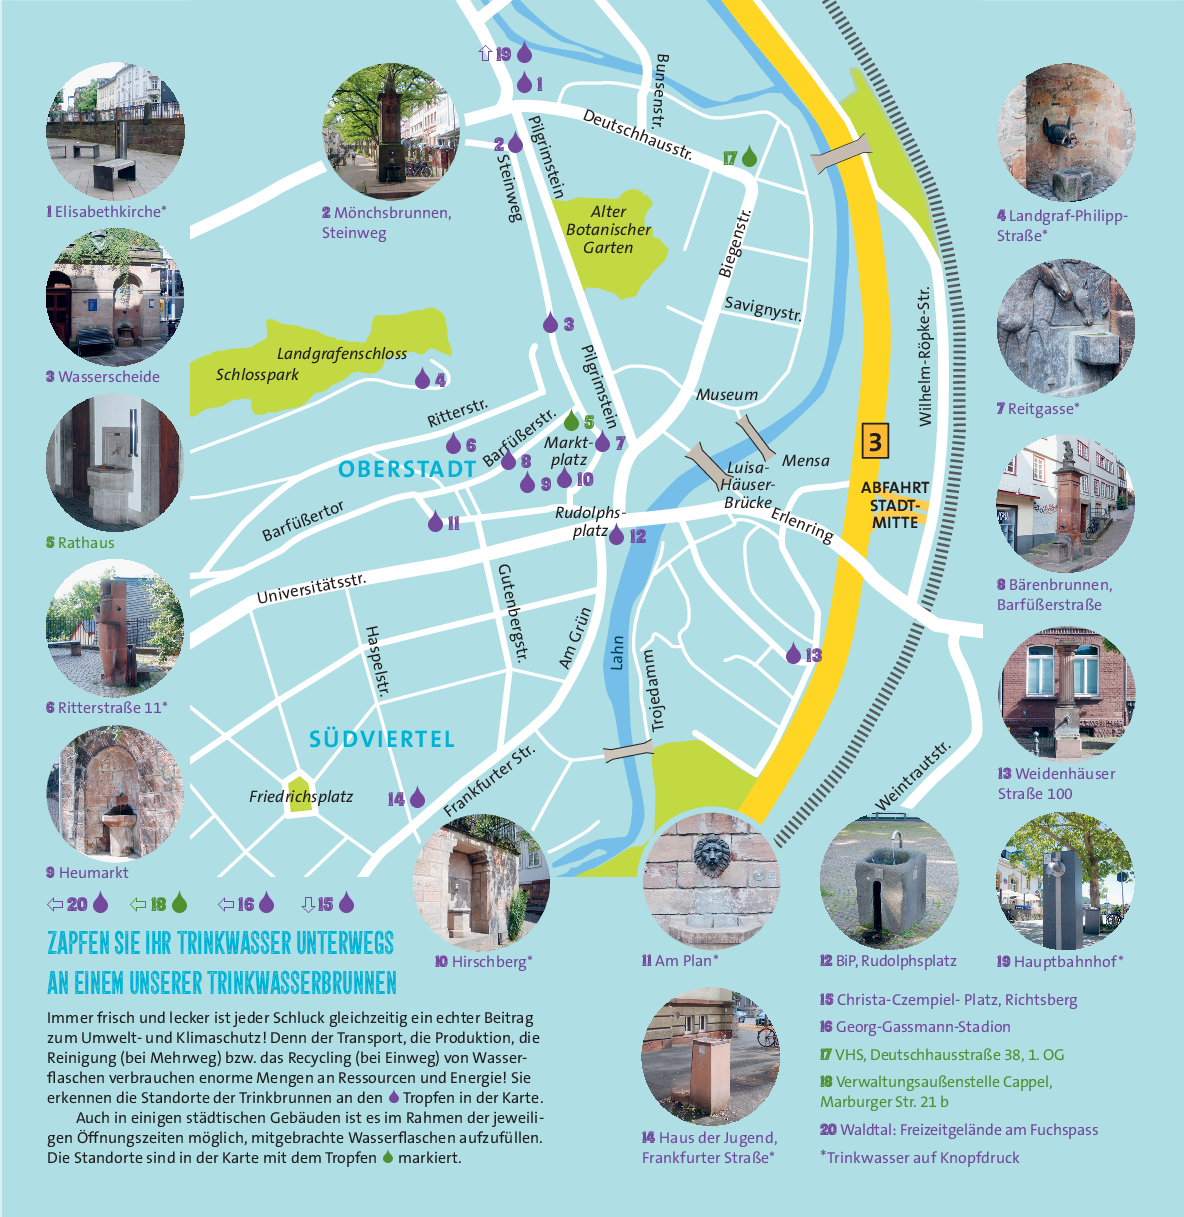 Karte der Trinkwasserbrunnen in der Marburger Innenstadt